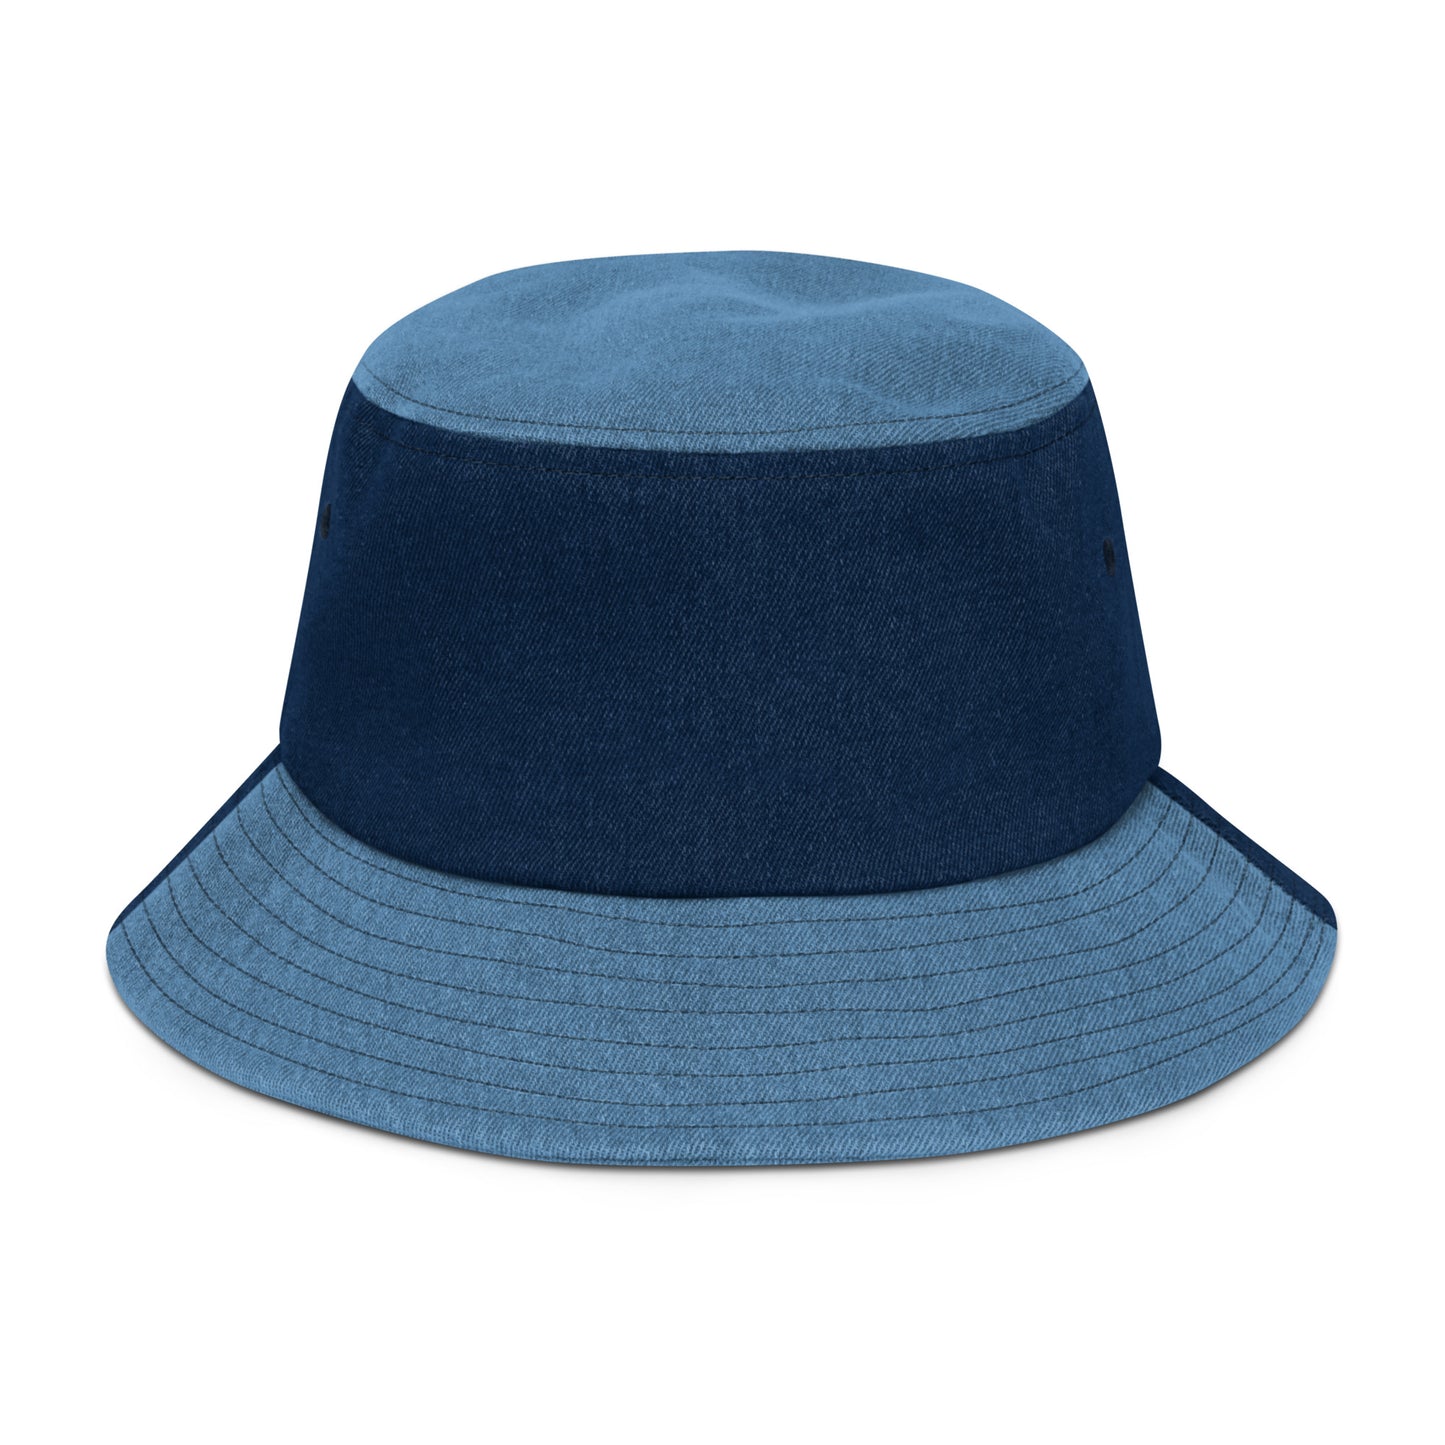 ChrioSwag Safetypin | Bucket Hat